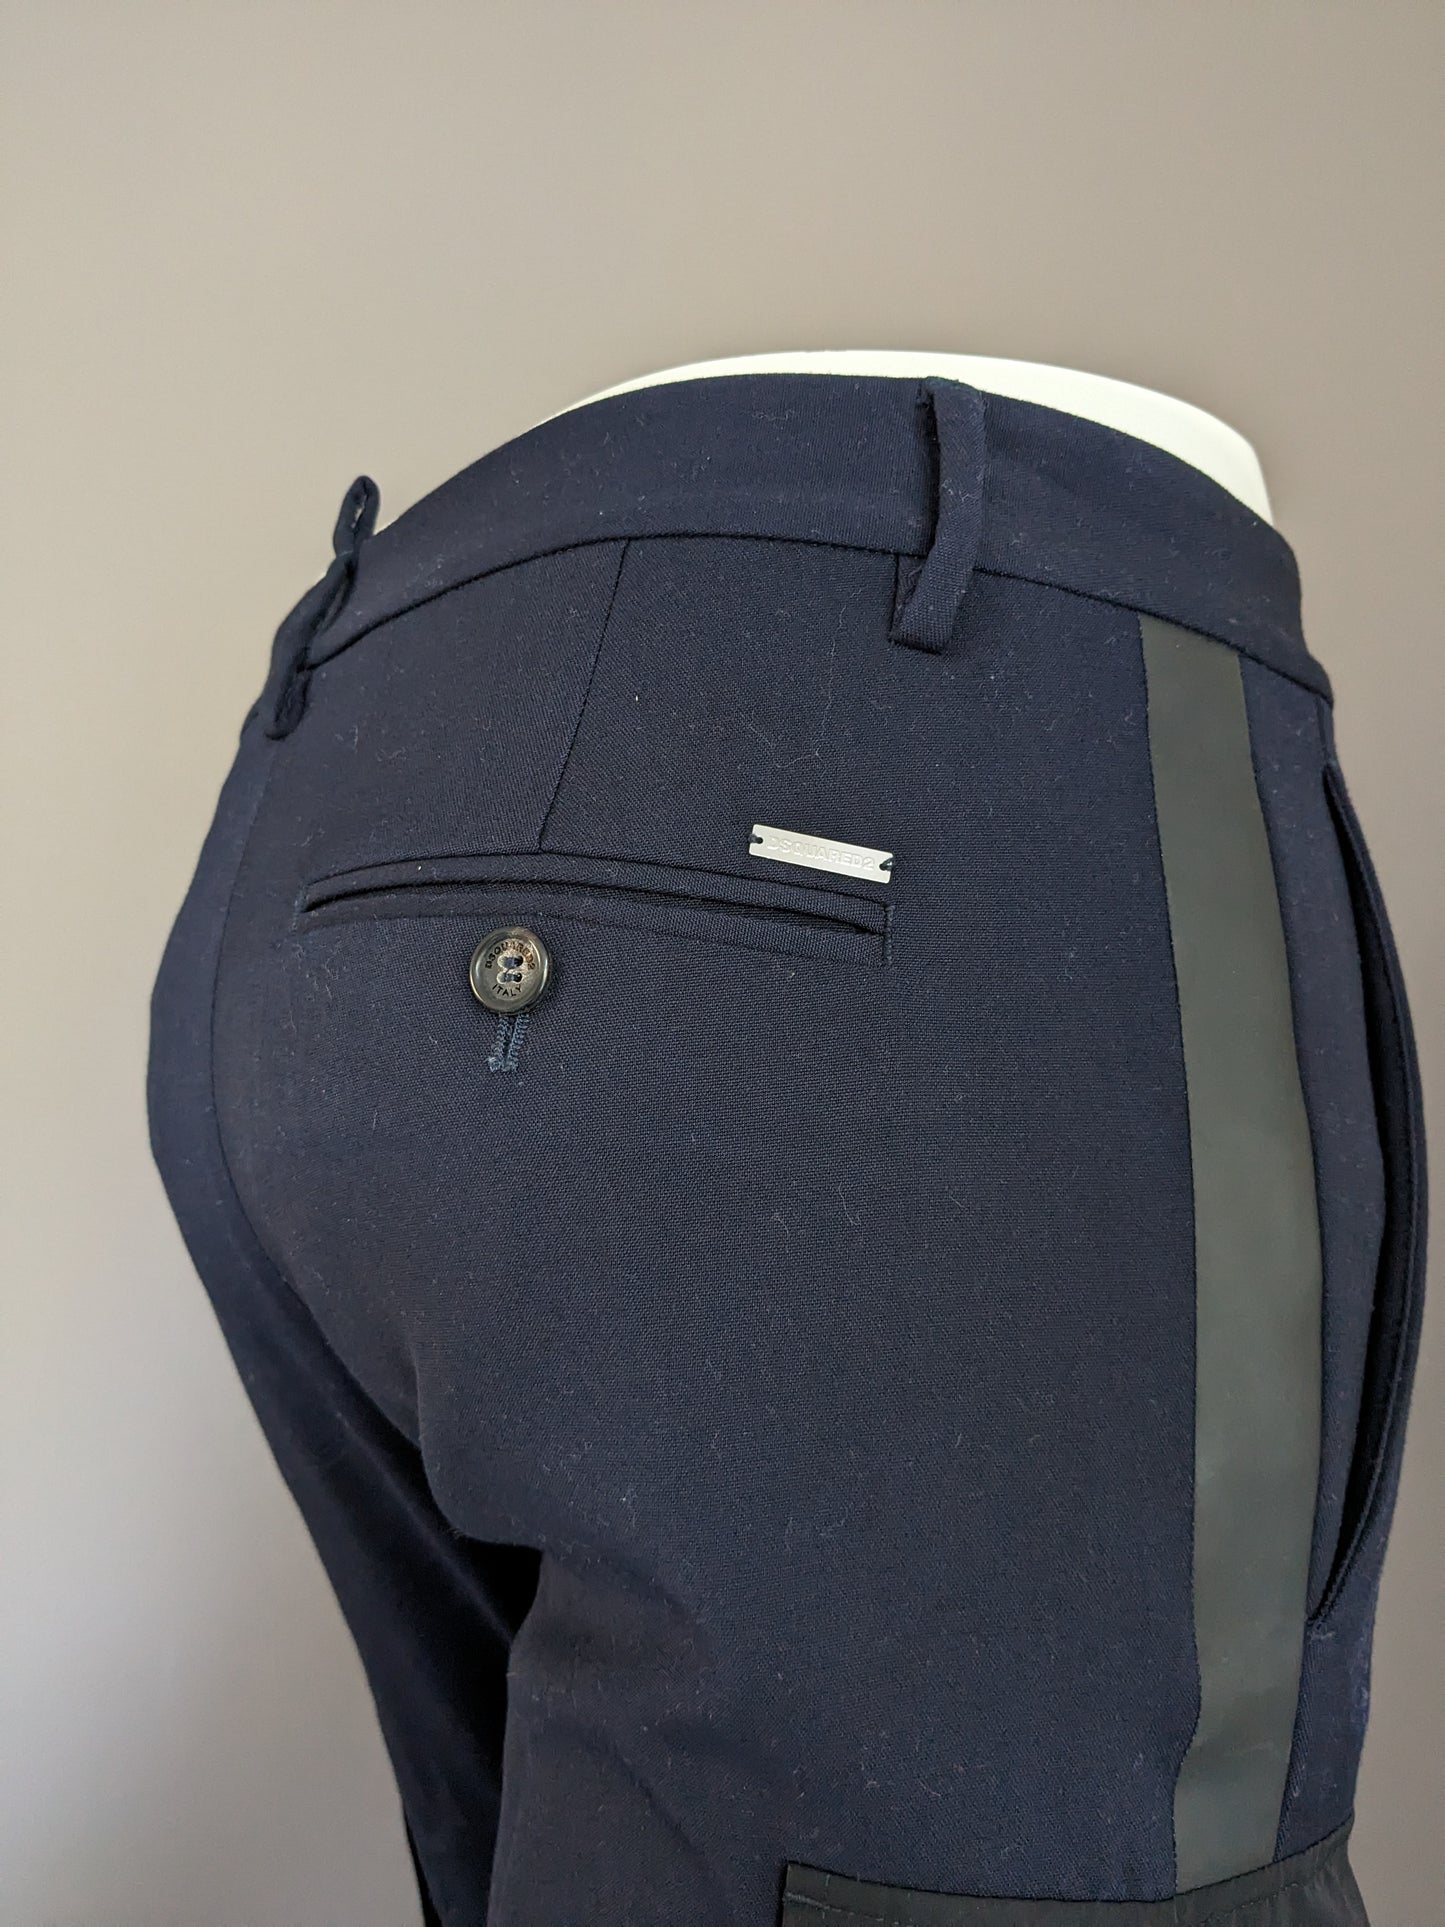 Pantalón cargo ajustado Dsquared2. Color negro azul oscuro. Talla 46/S.